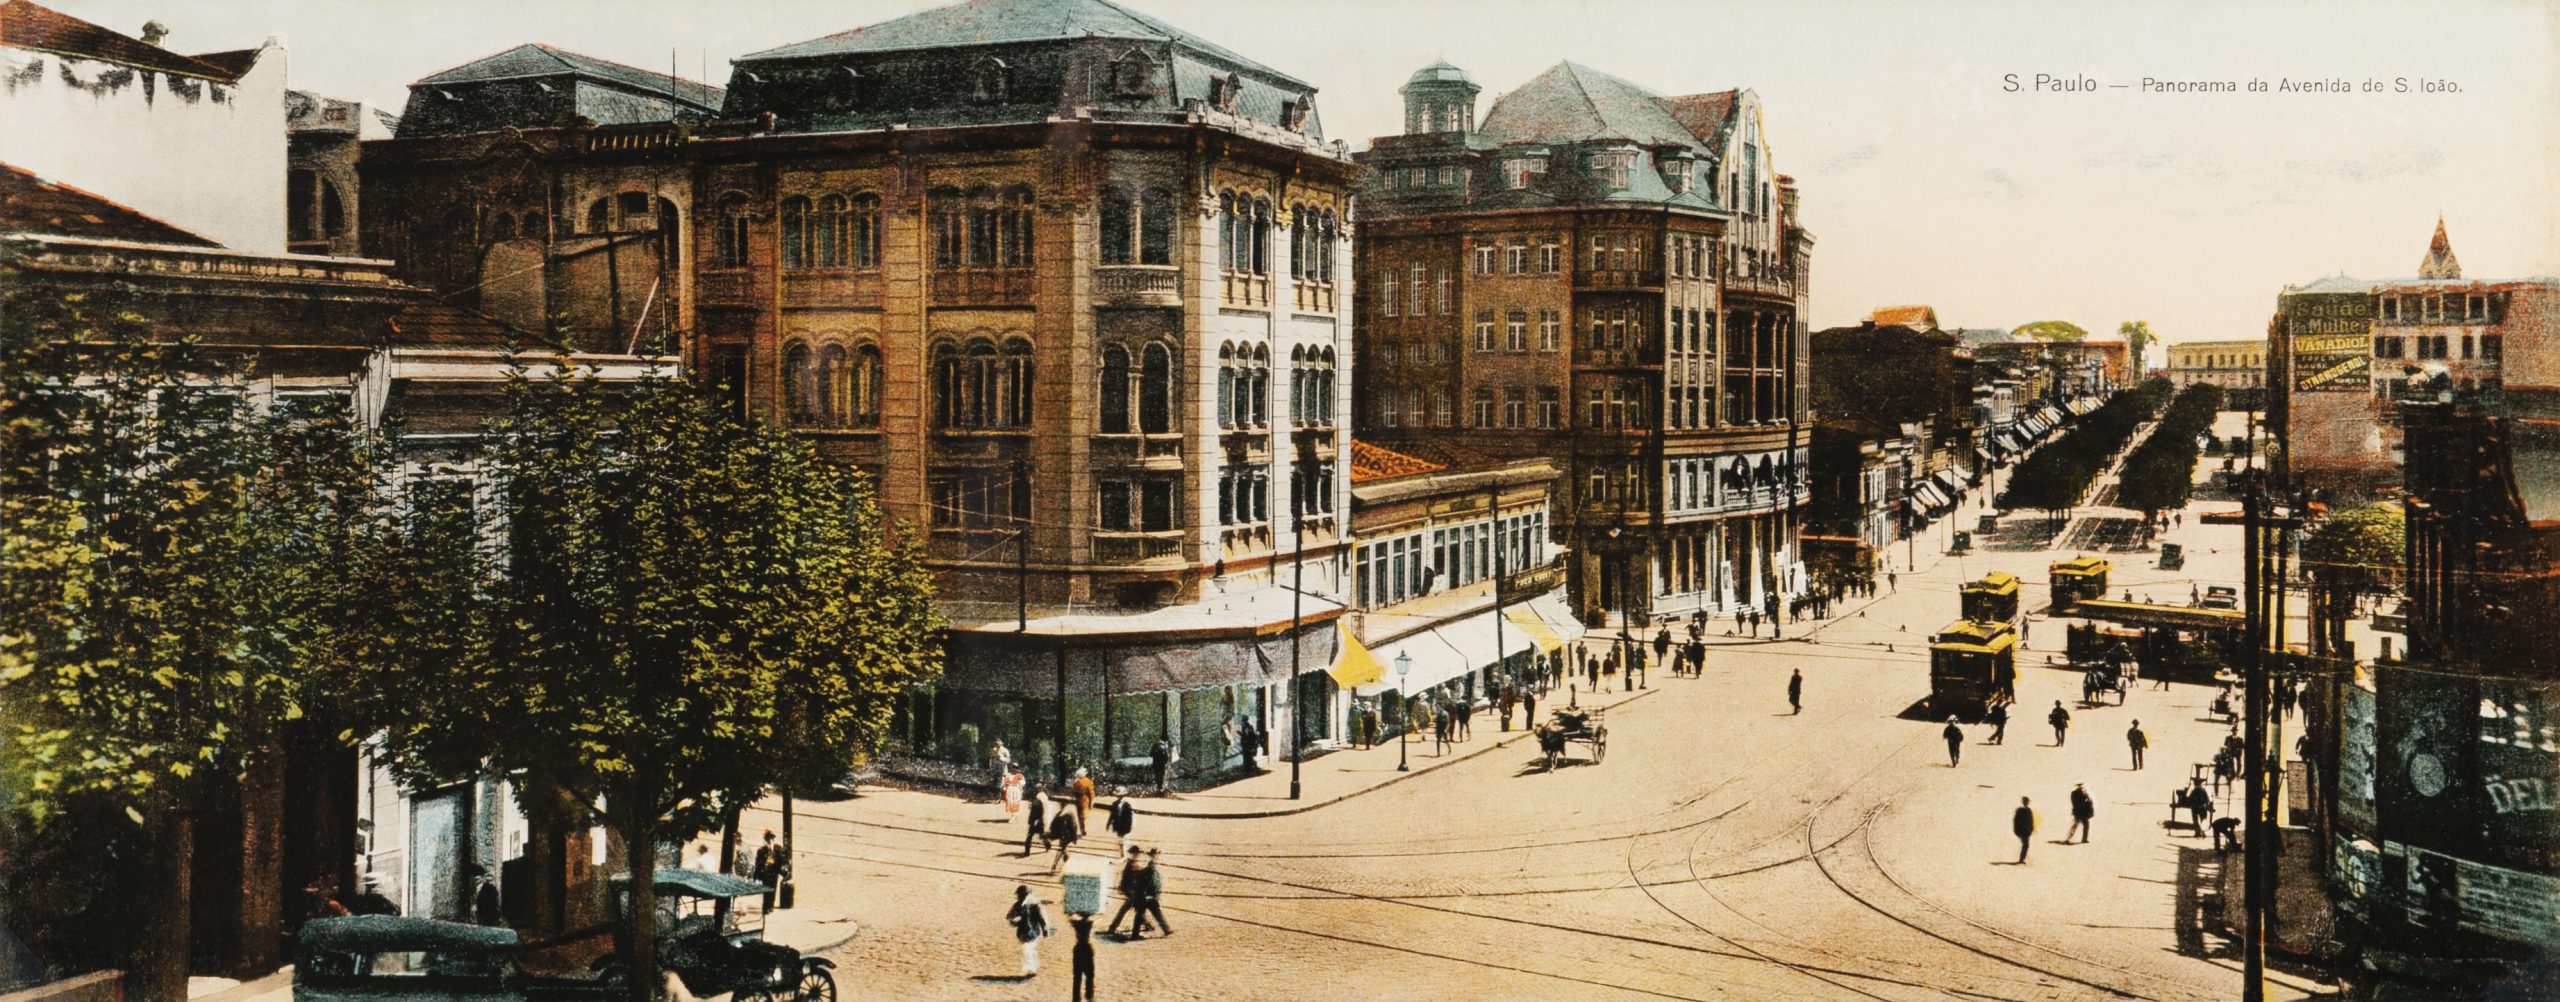 Imagem mostra ilustração de esquina com estrada de terra e prédios antigos.